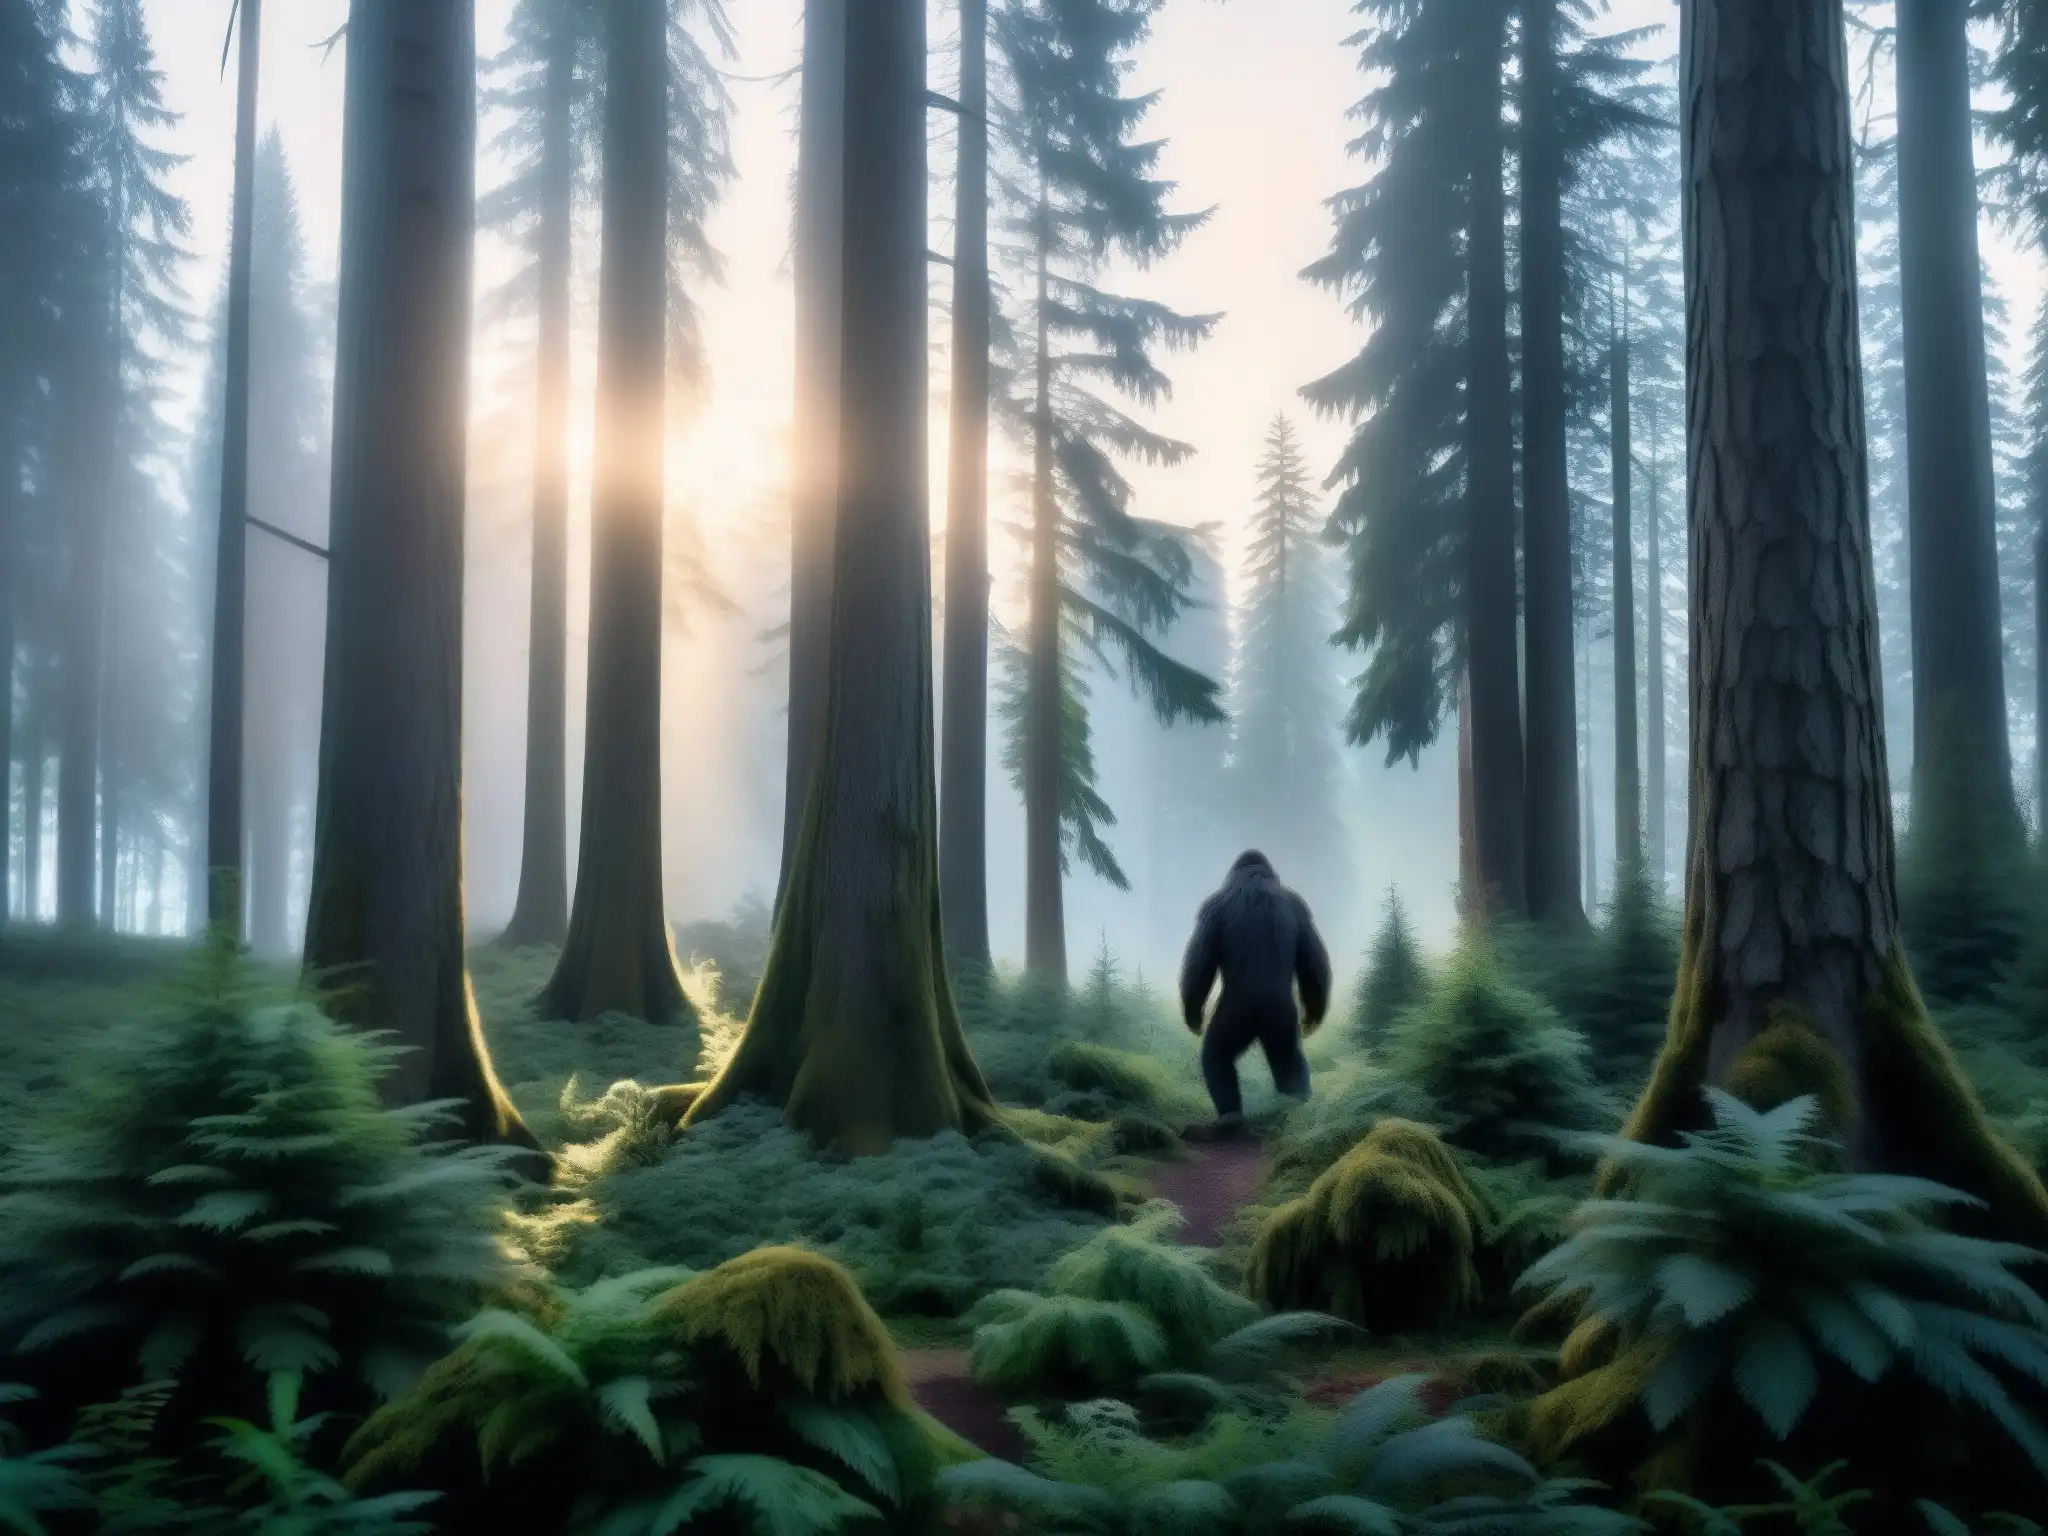 Imagen impactante de un denso bosque al anochecer con una figura misteriosa entre los árboles, evocando el mito del Bigfoot desenmascarado